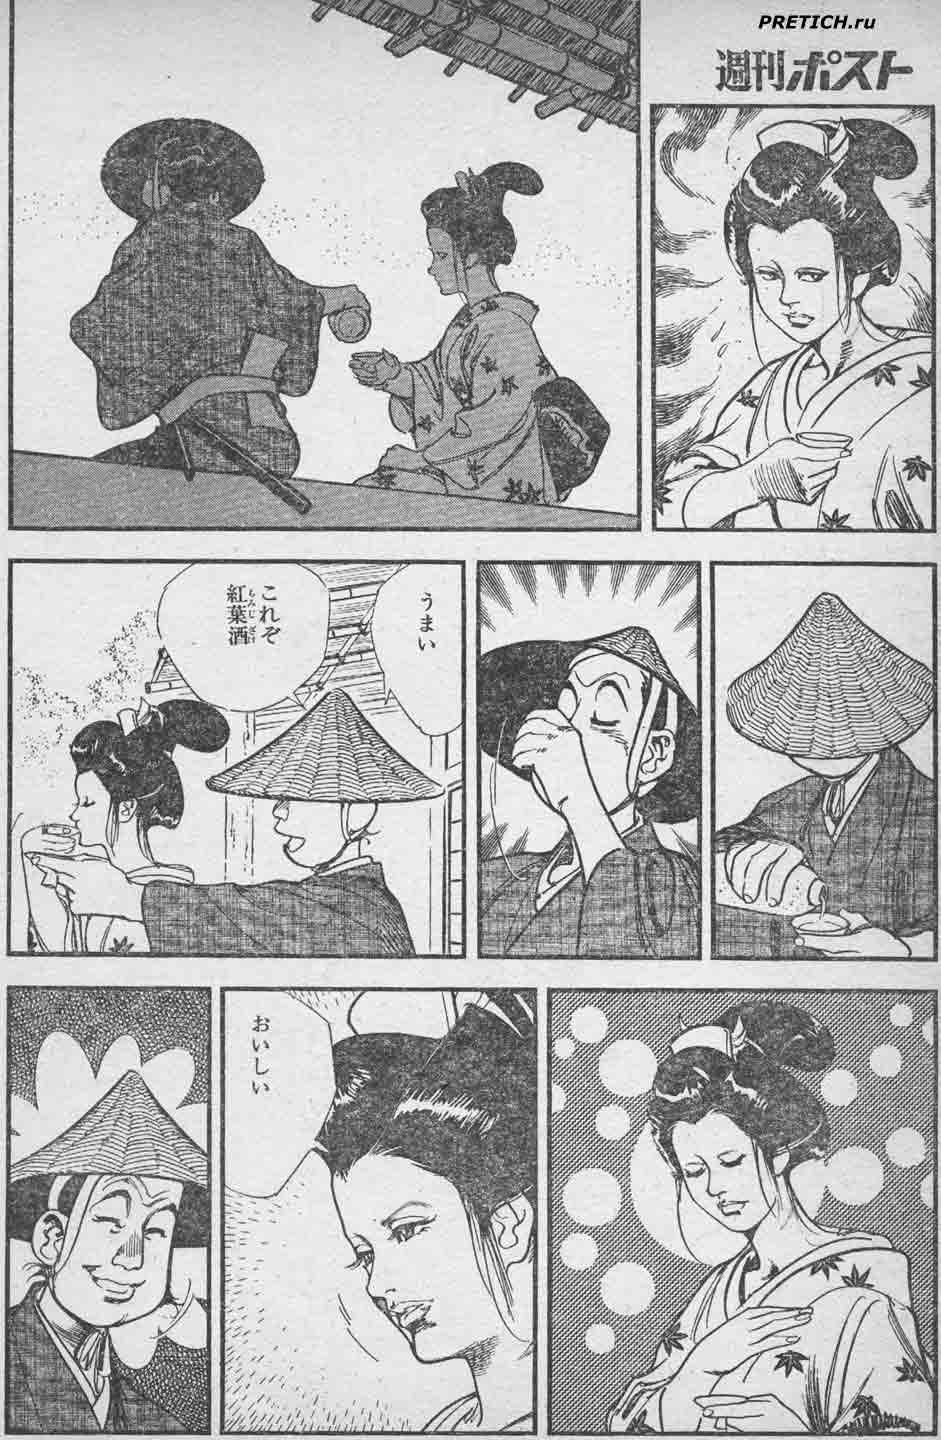 старые комиксы начала 80-х годов, Япония